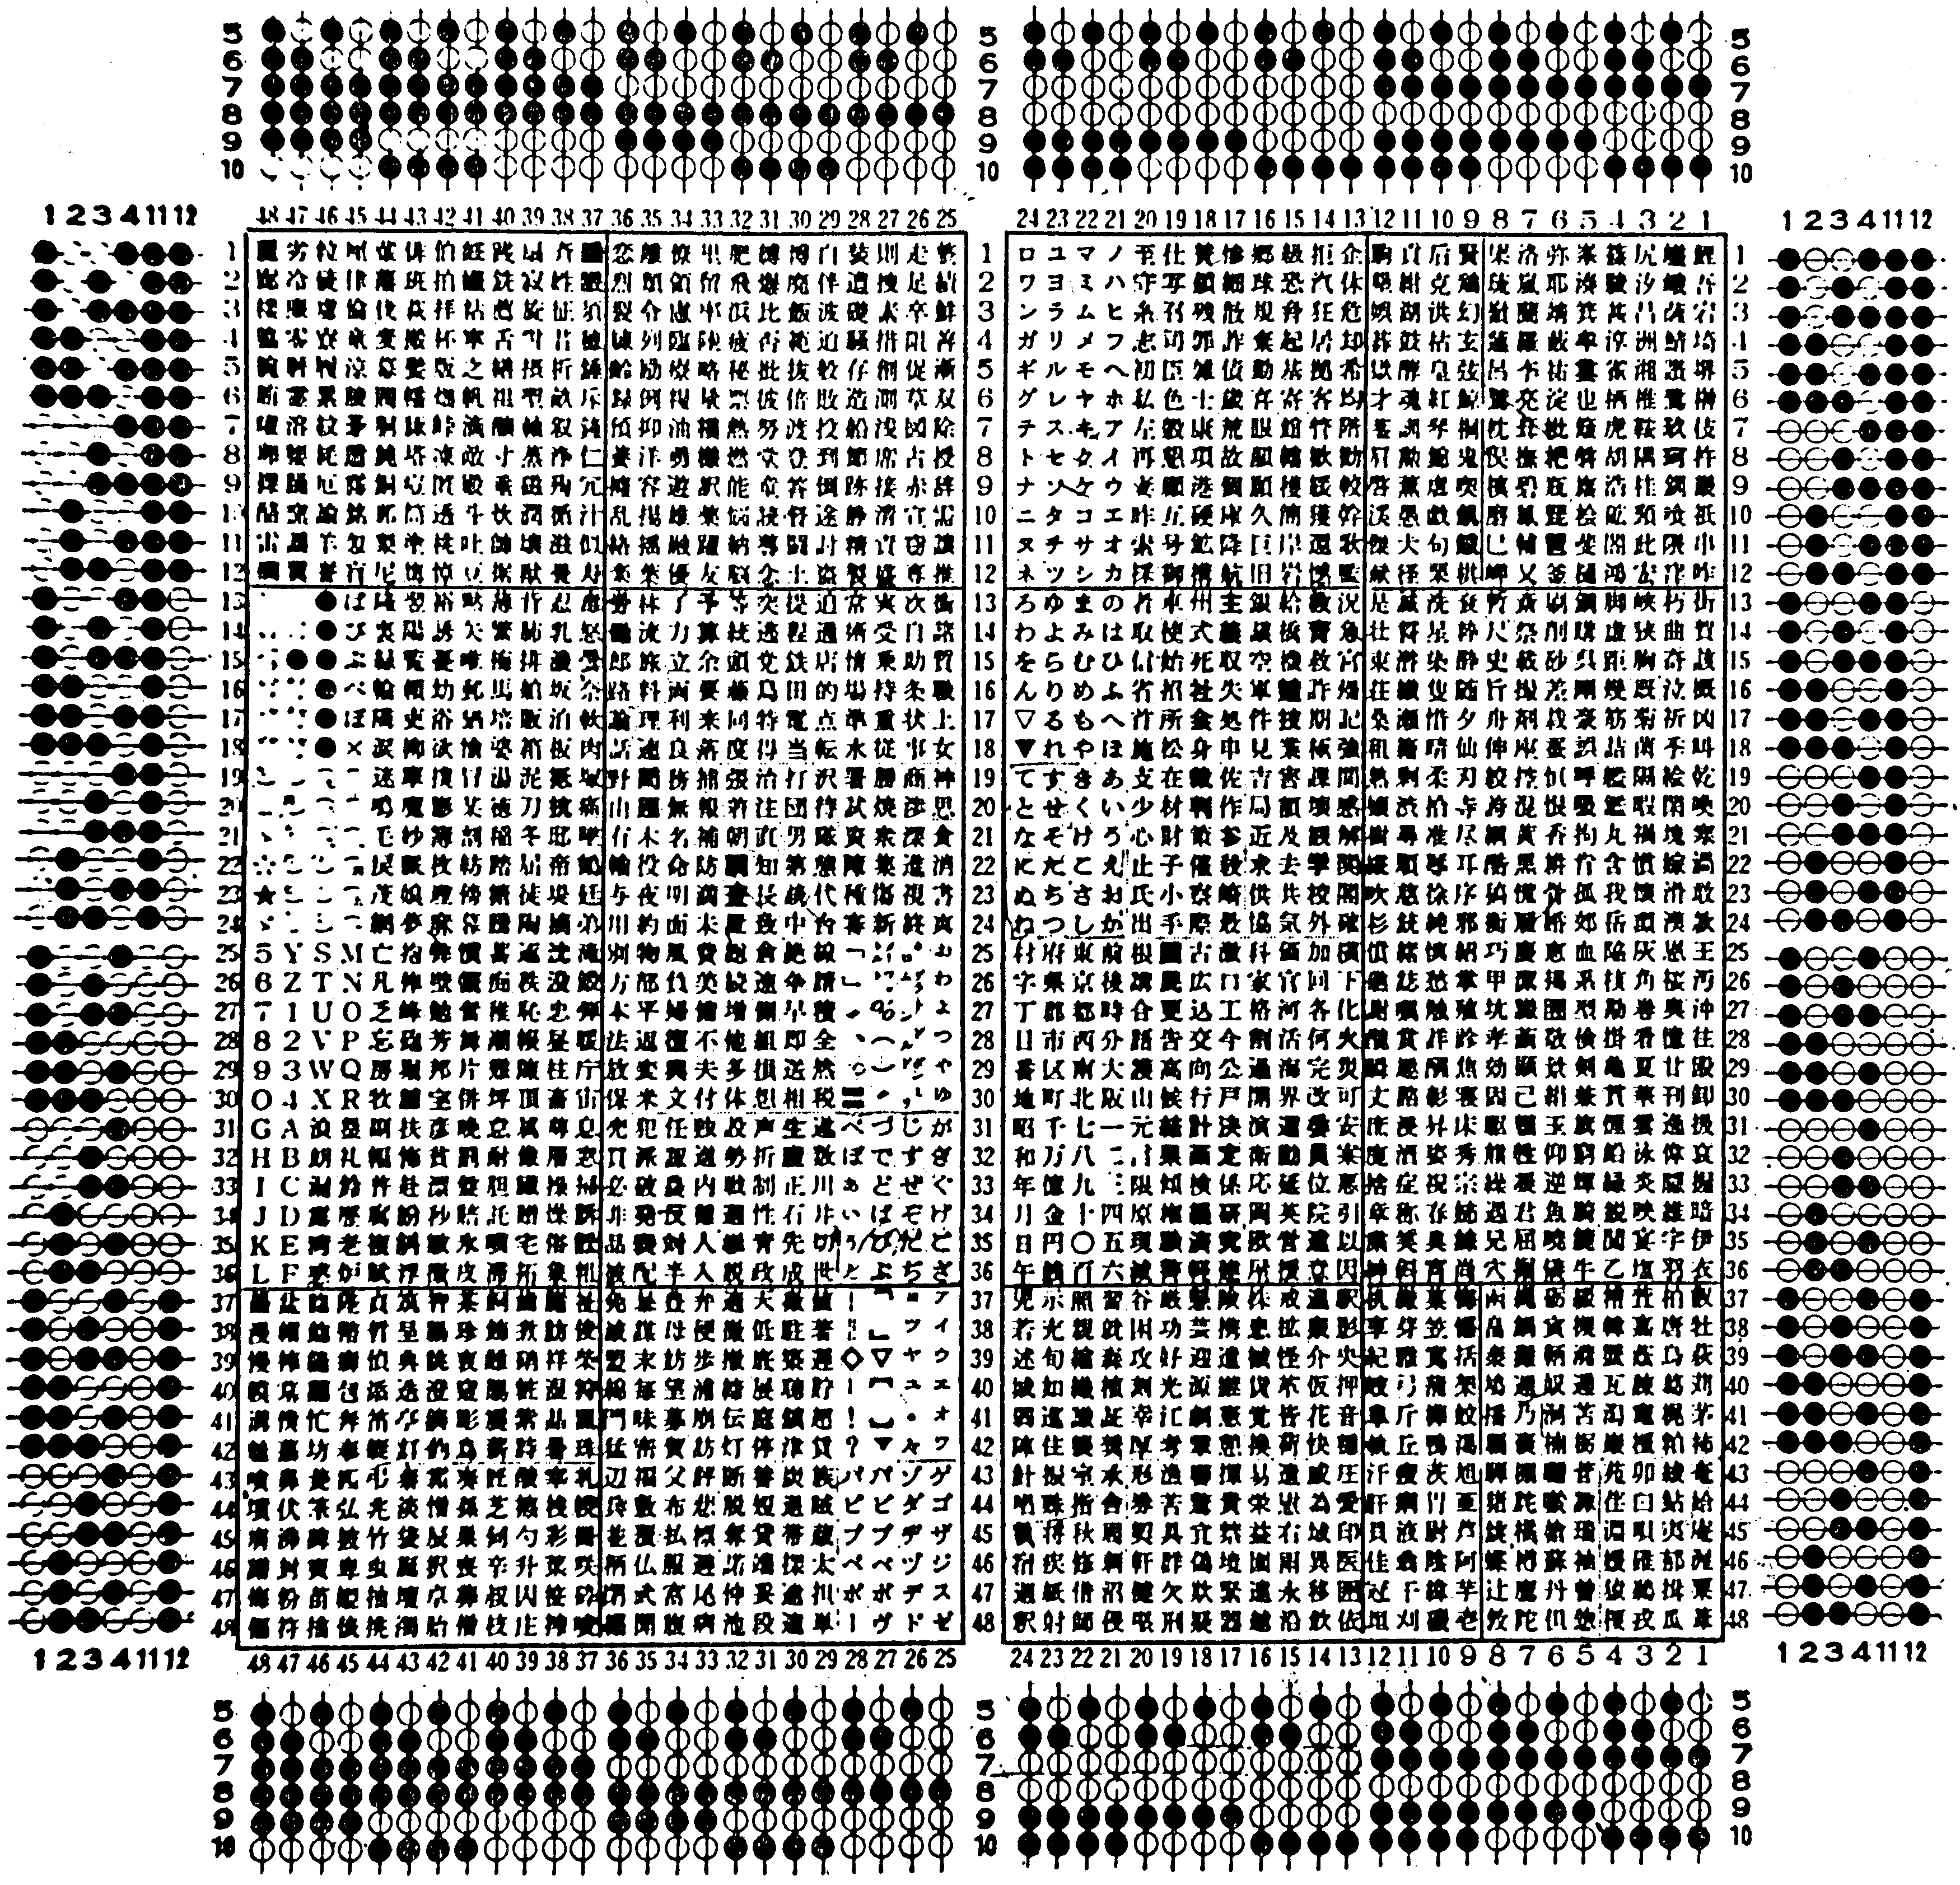 朝日新聞社の「漢字テレタイプ」文字コード表